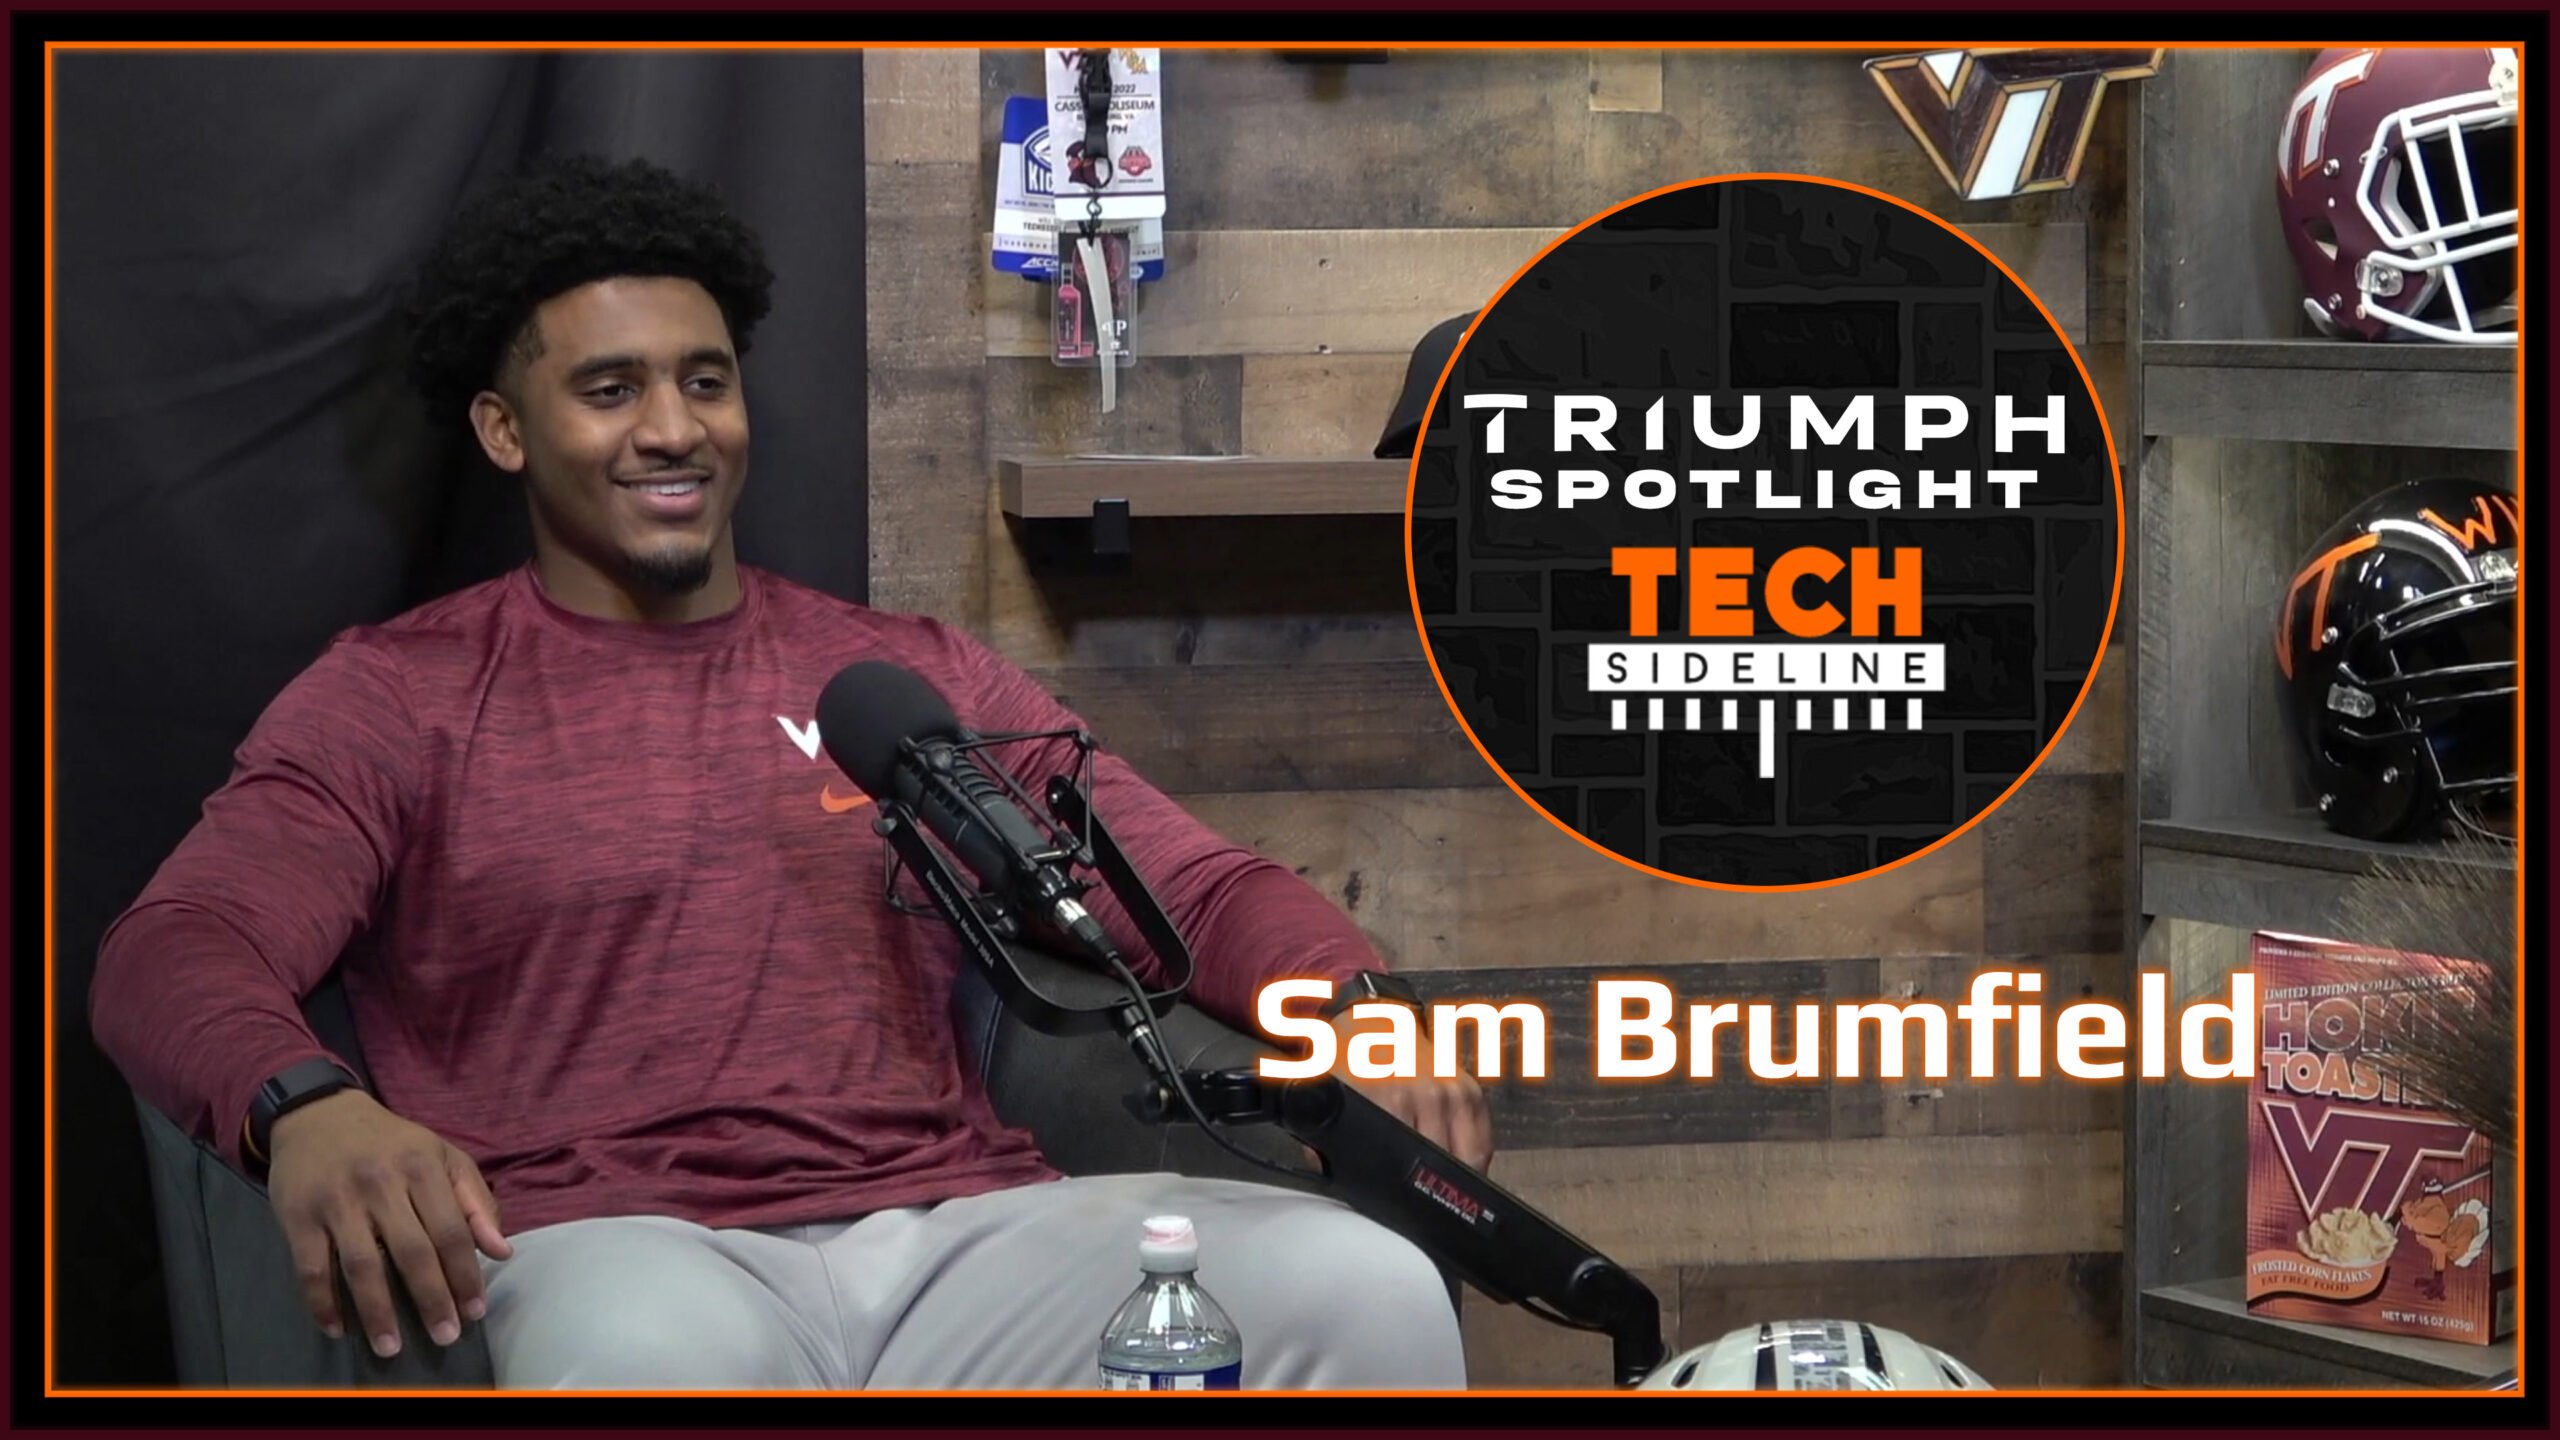 Sam Brumfield Triumph Spotlight Thumb